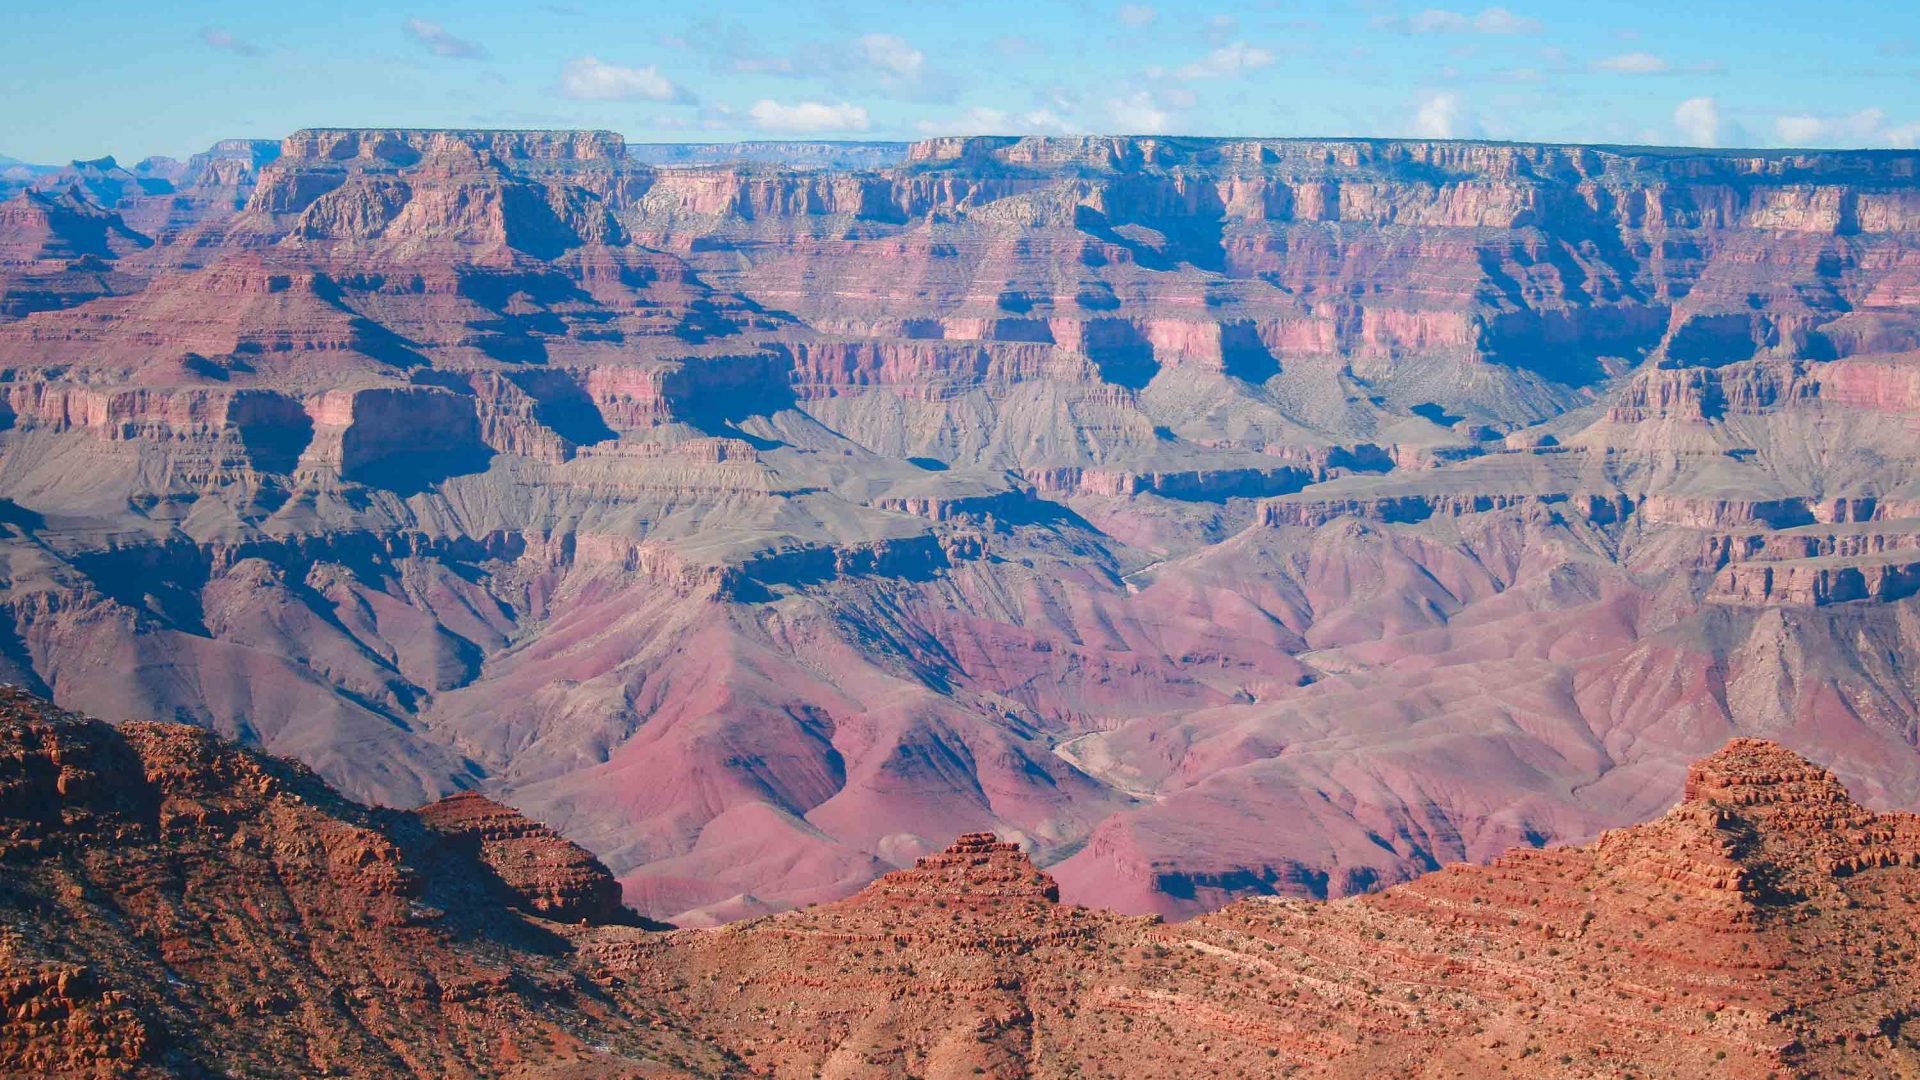 The Grand Canyon in Arizona.